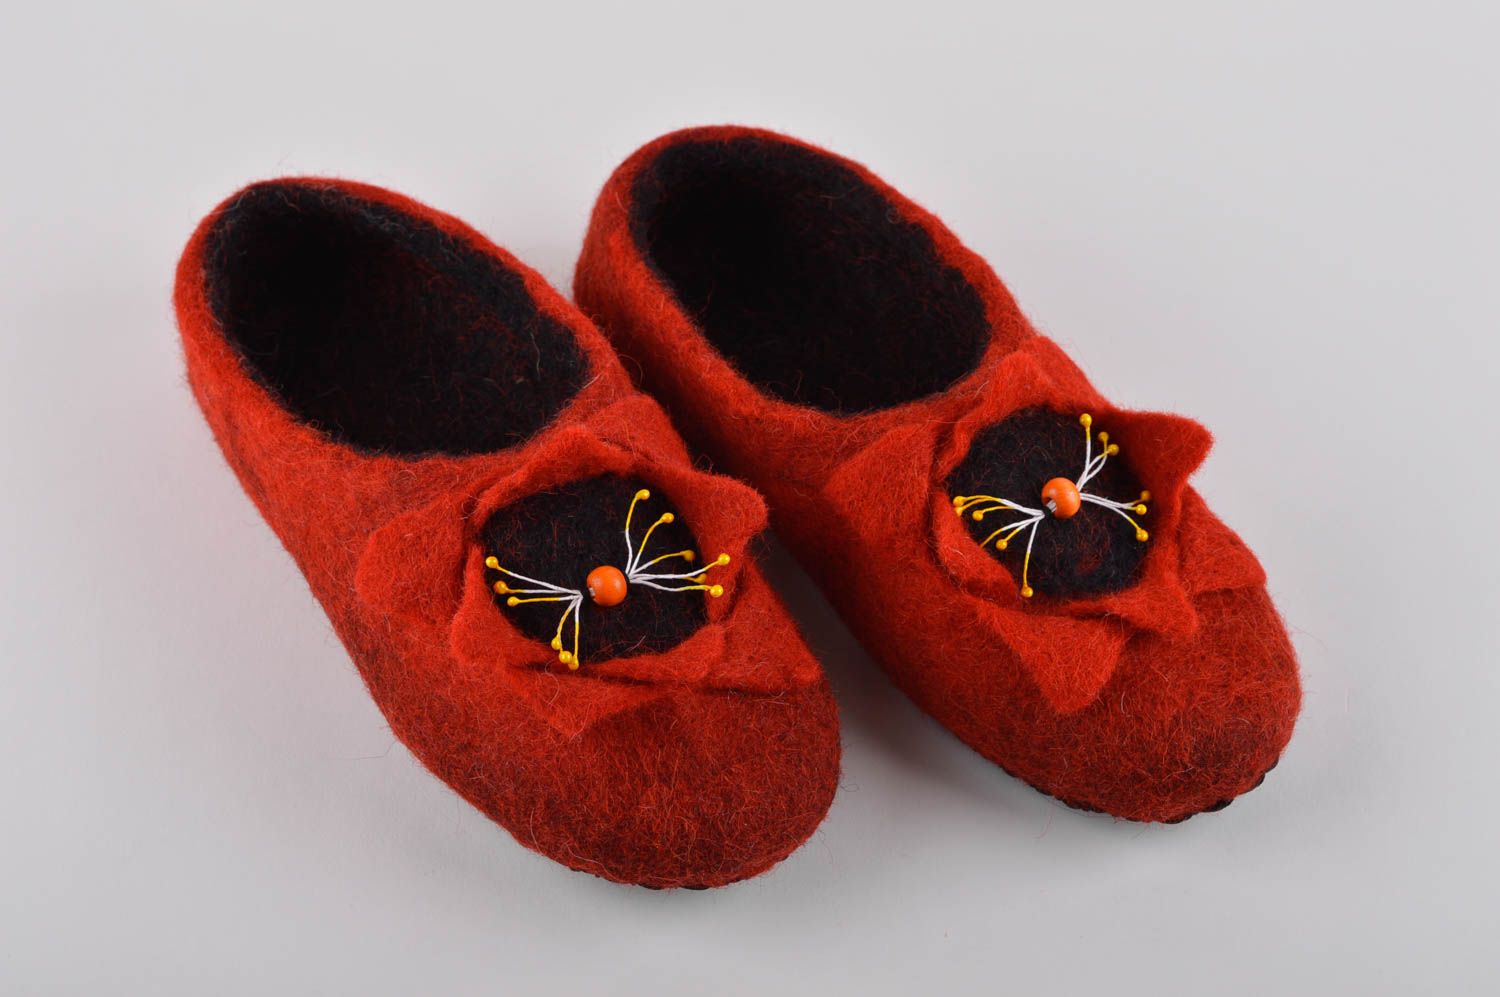 Handmade Hausschuhe gefilzt Pantoffel Schuhe warme Damen Hausschuhe rot schön foto 2